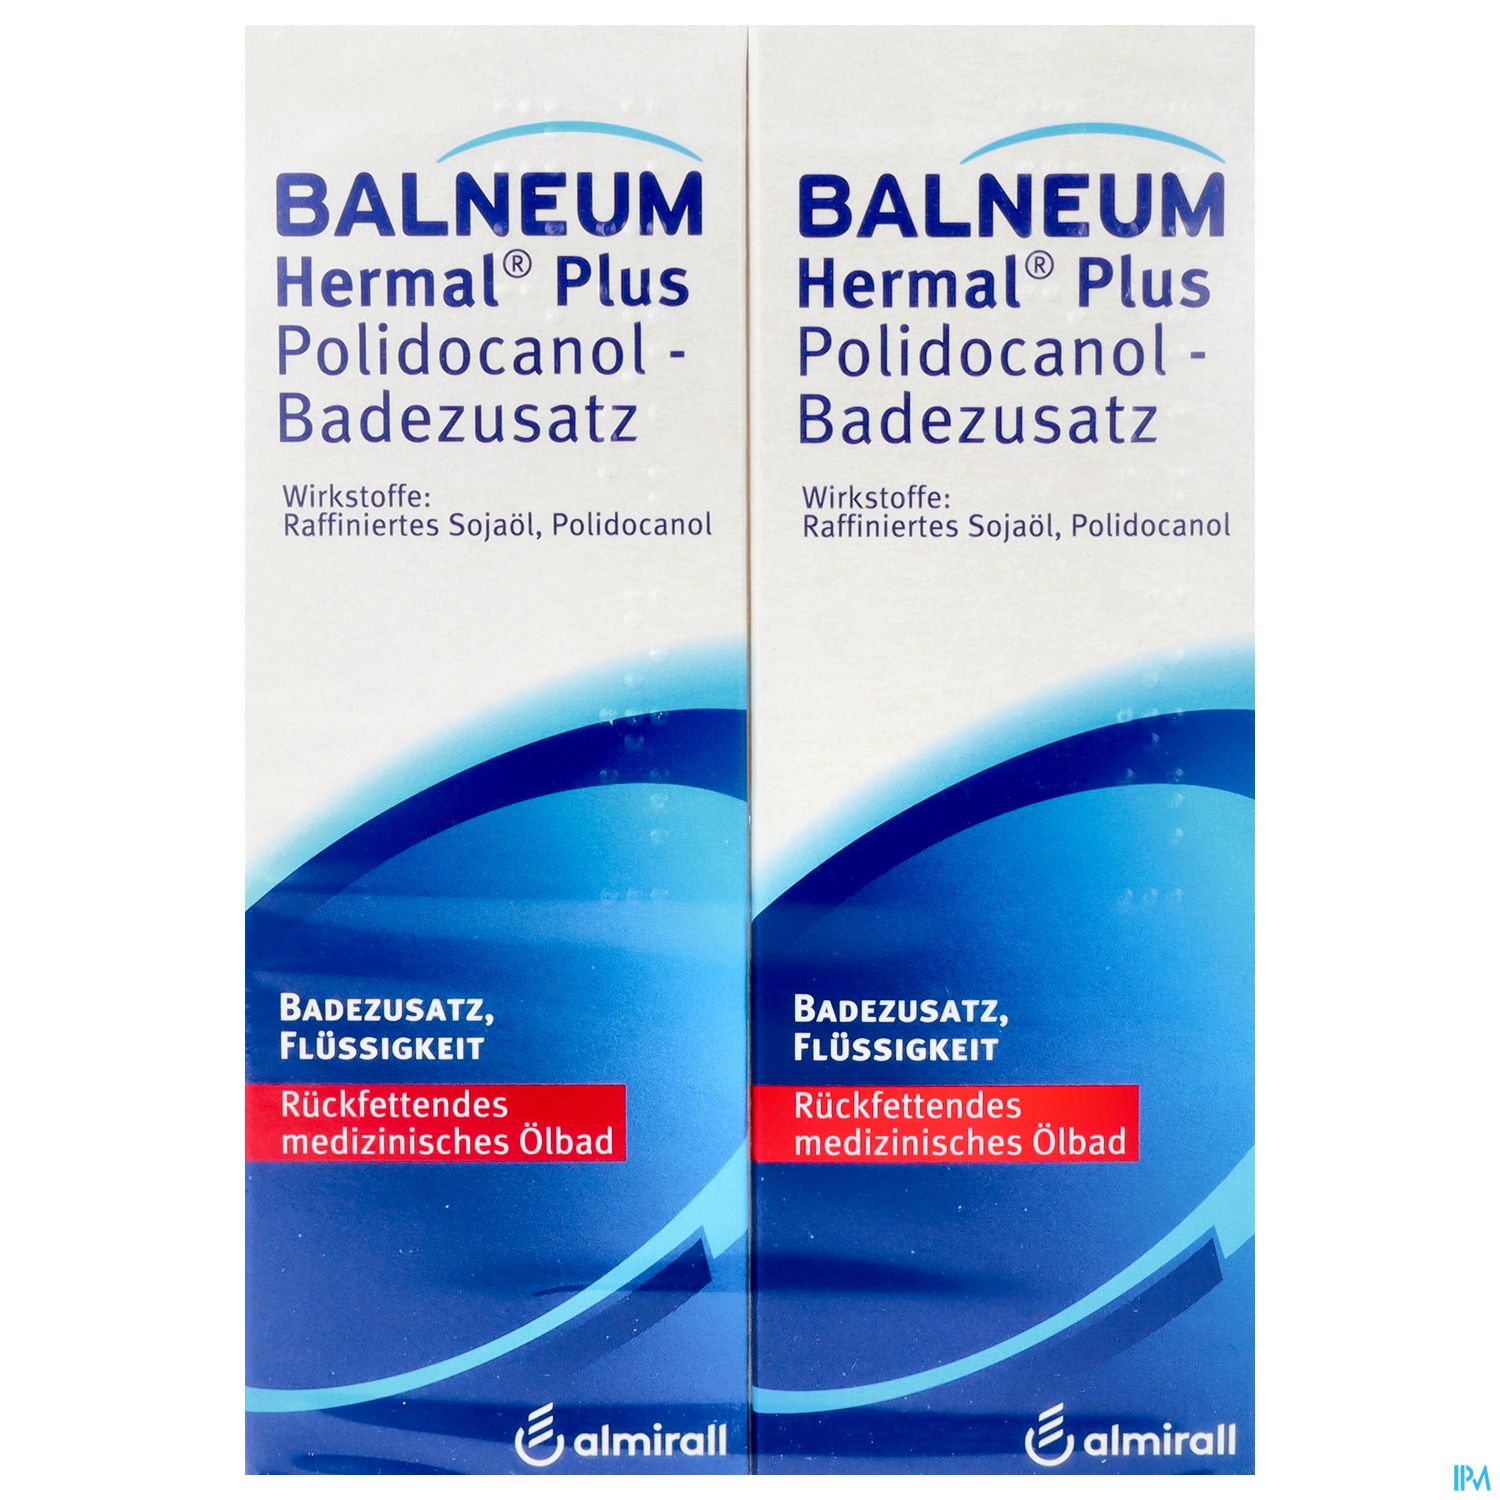 Balneum Hermal Plus Polidocanol - Badezusatz